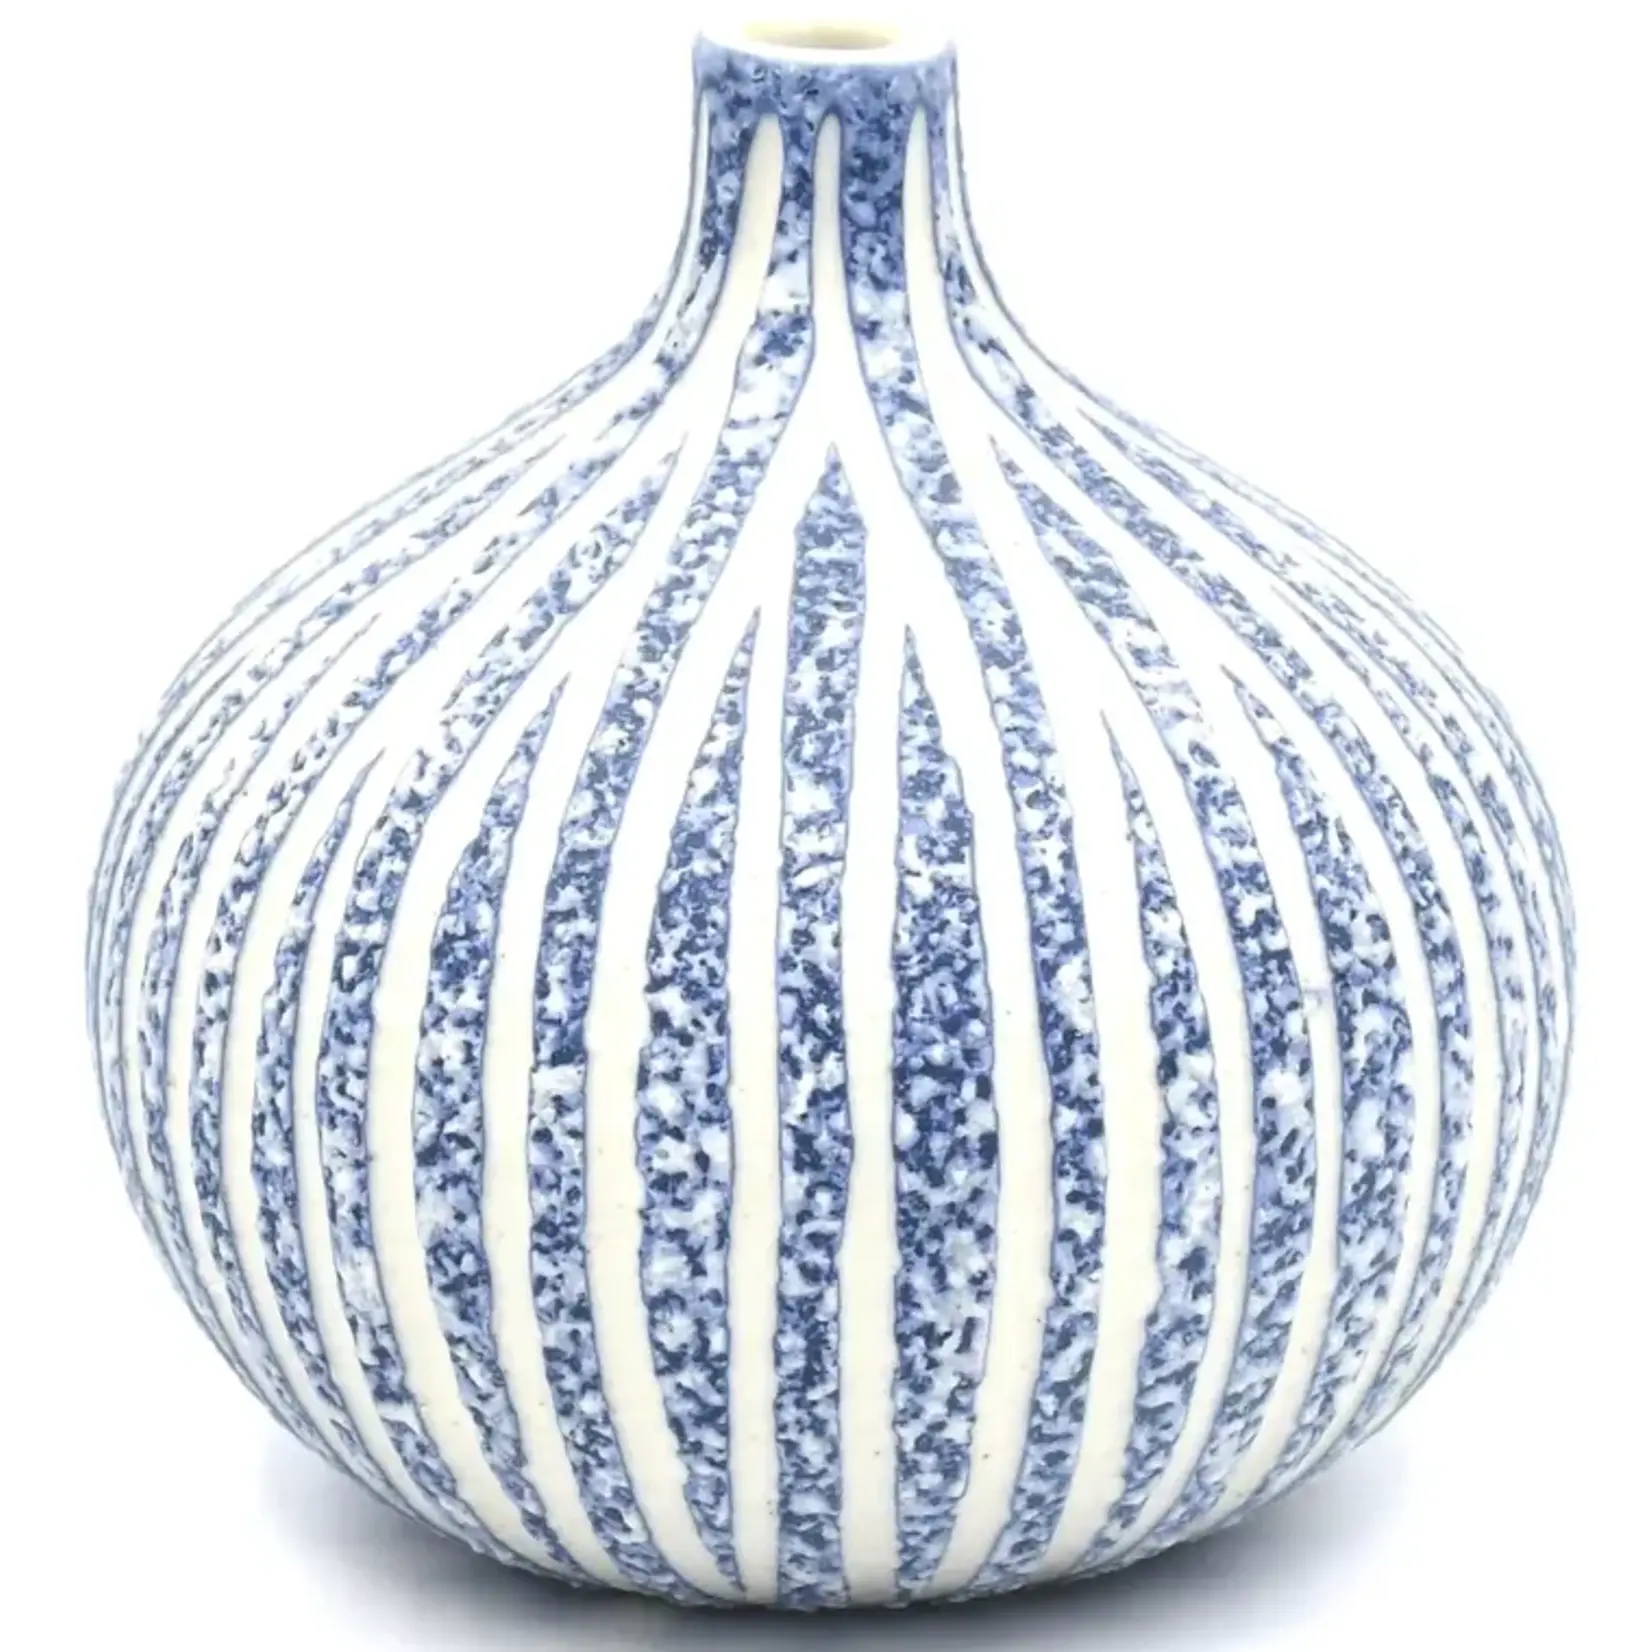 Congo Tiny Porcelain Bud Vase in W16 Blue/White